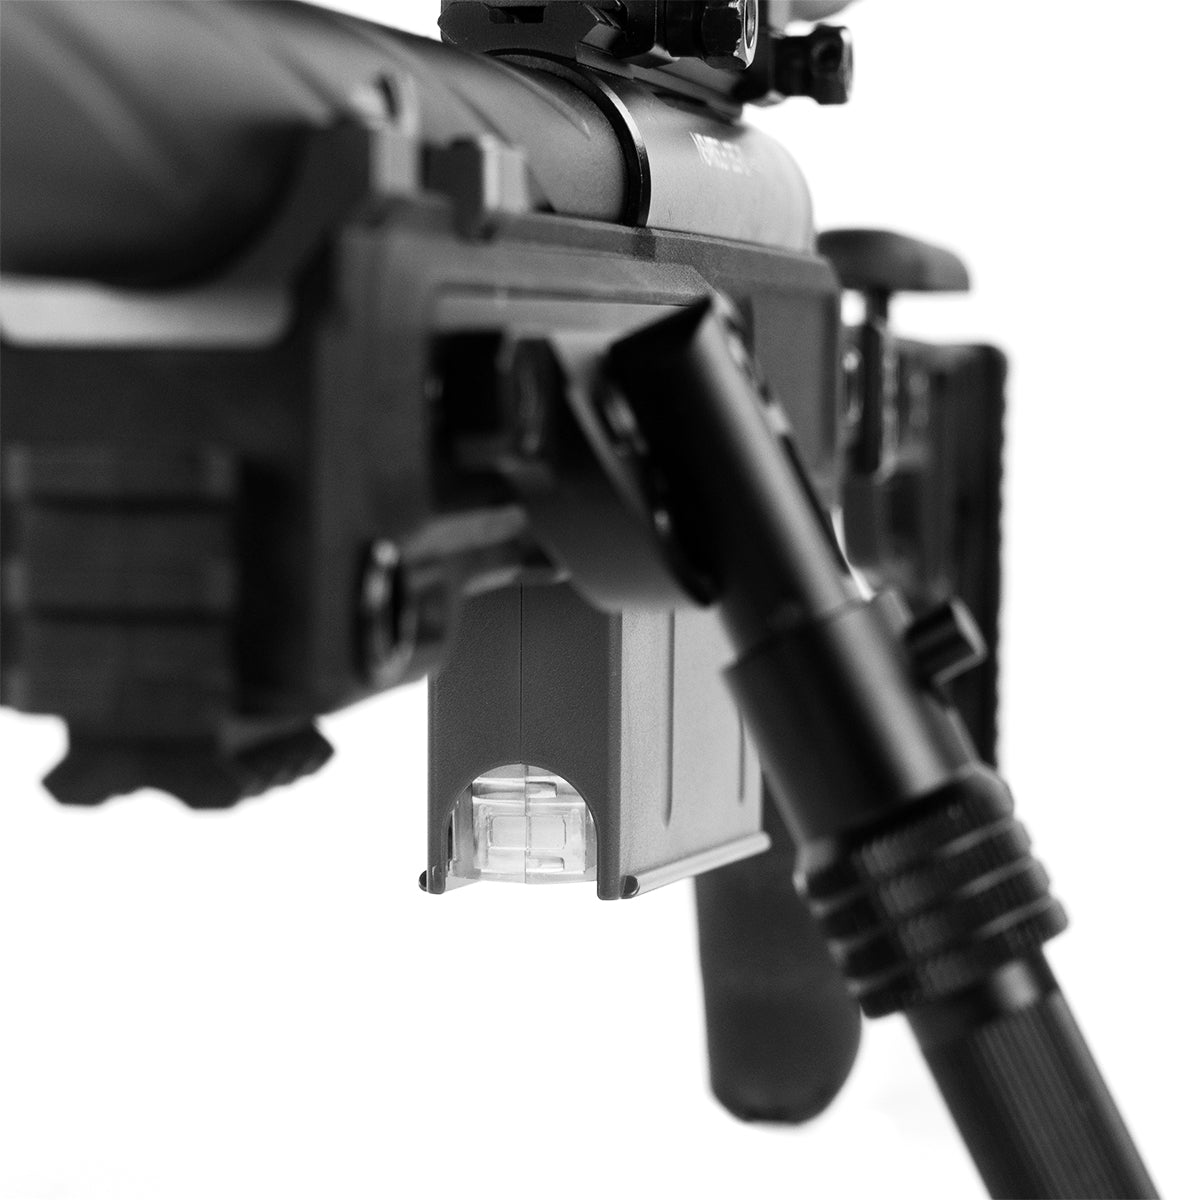 Novritsch SSG10 A3, 5J Airsoft Sniper Rifle (733fps, M220) - grip V2